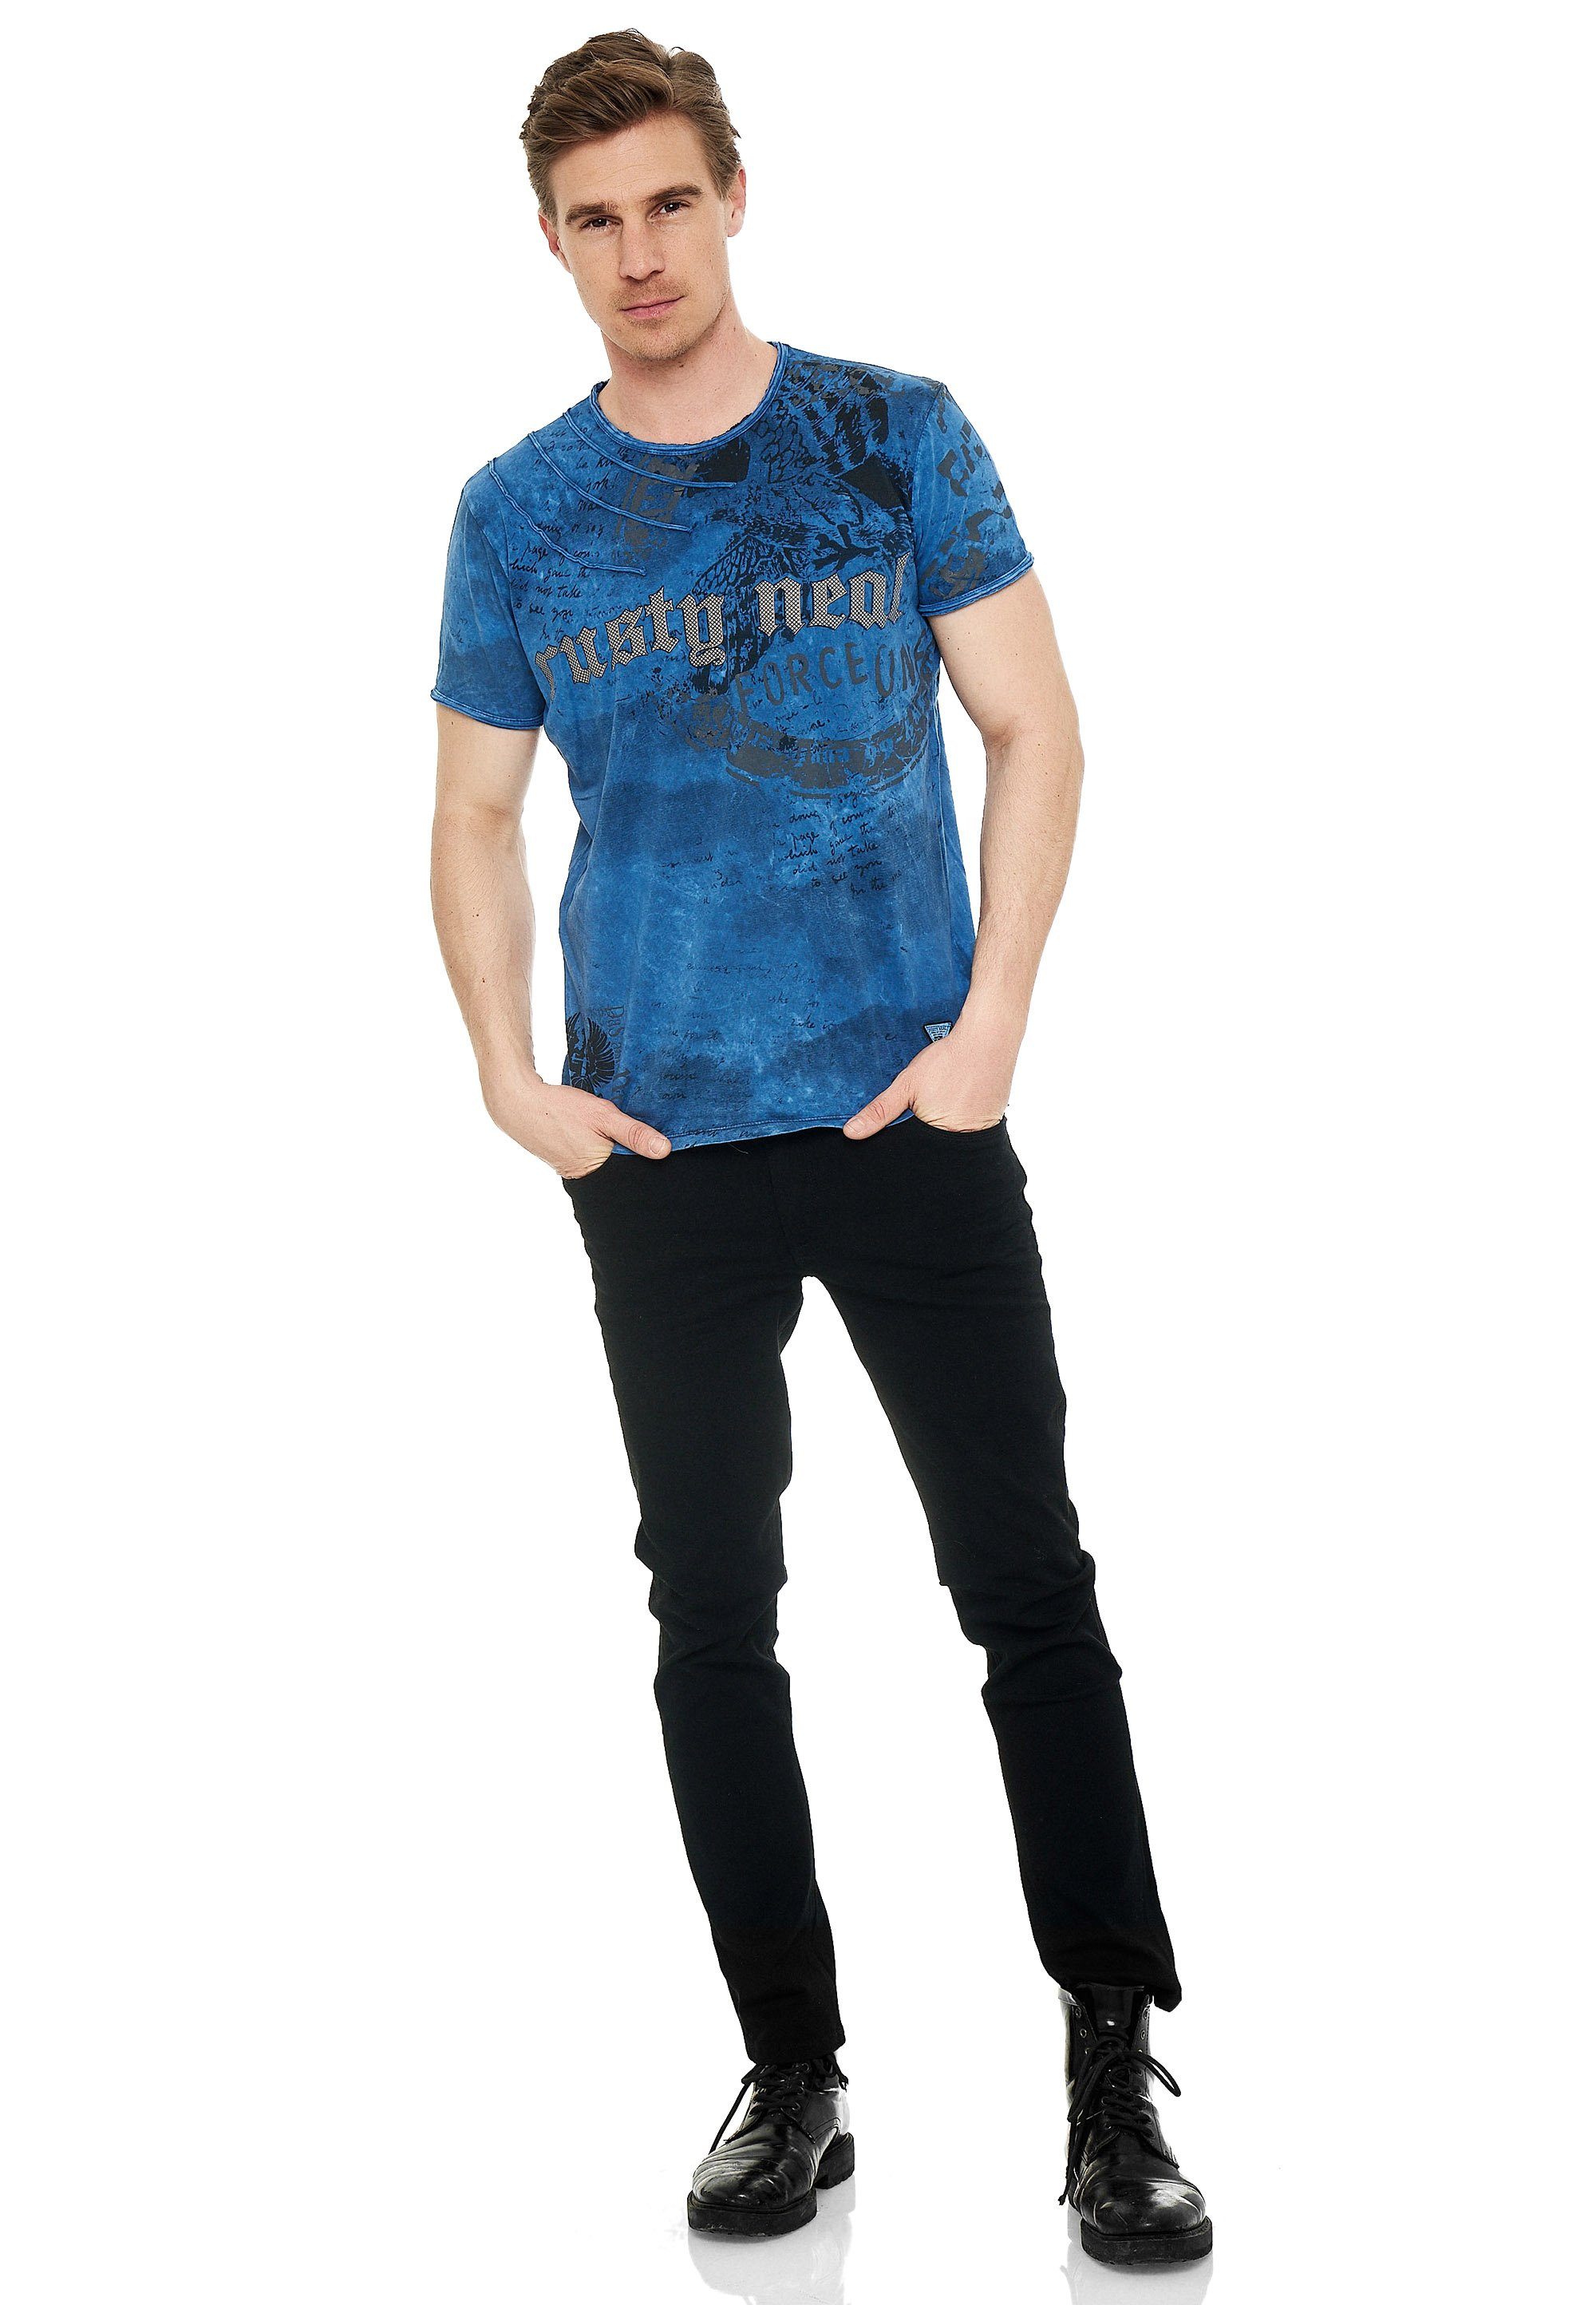 Rusty eindrucksvollem T-Shirt Print blau mit Neal